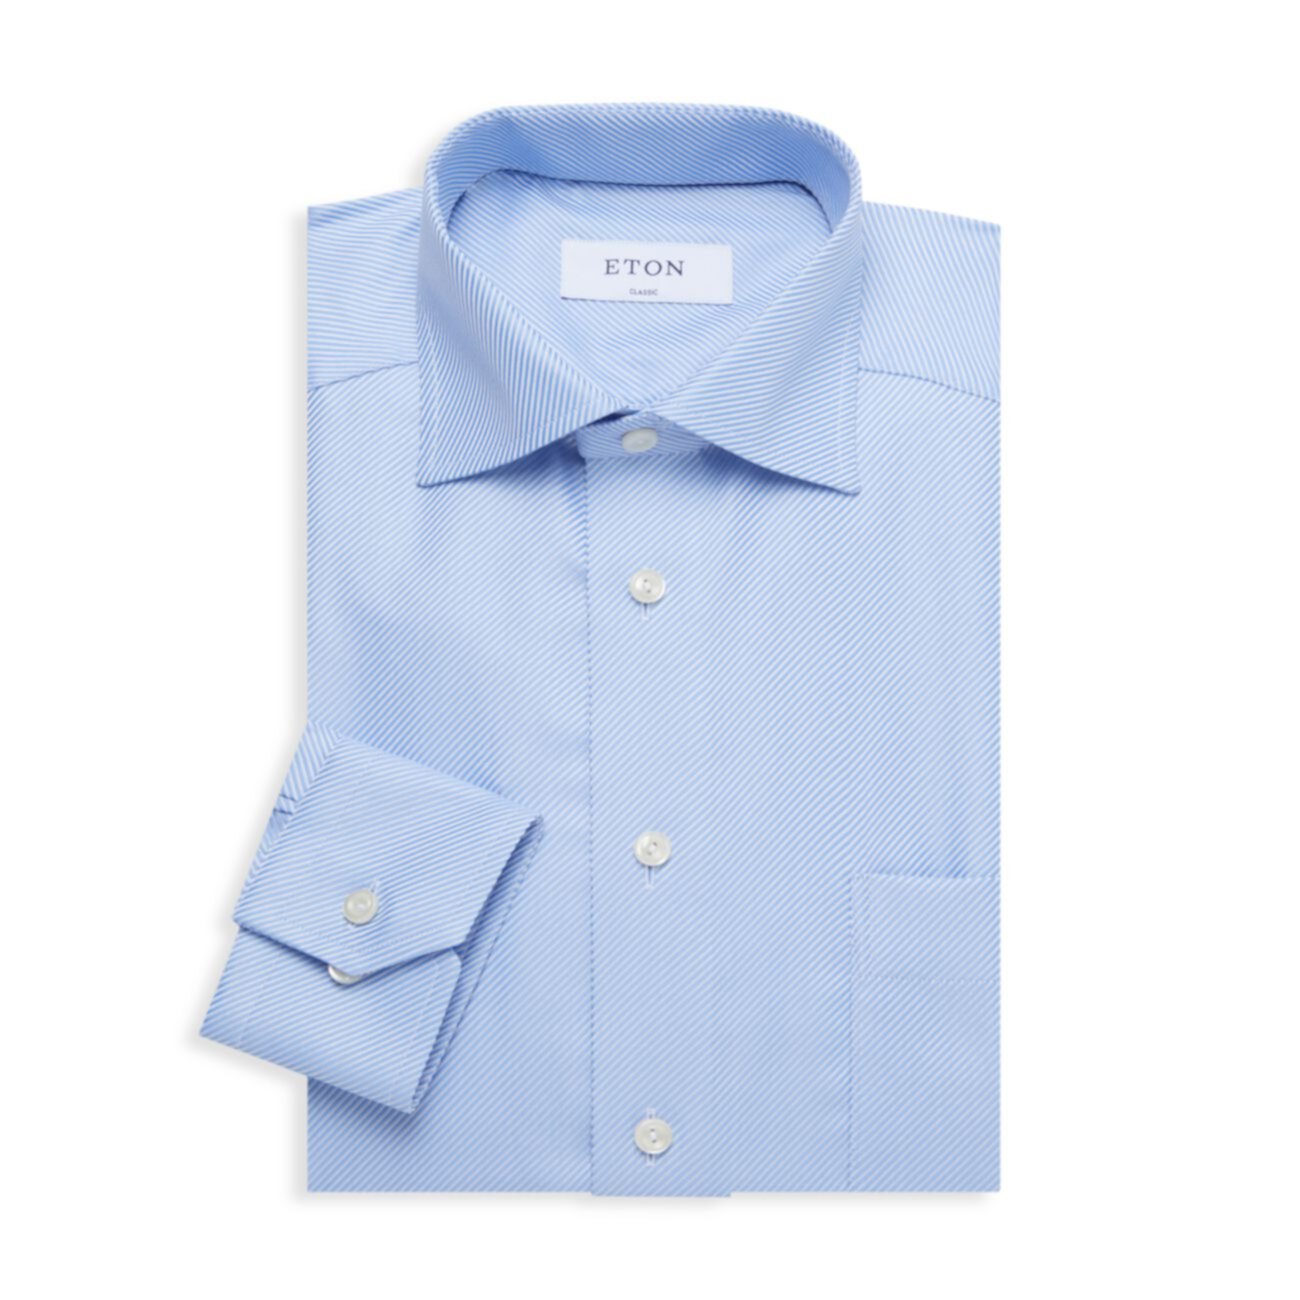 Классическая рубашка классического кроя с накладными карманами Eton